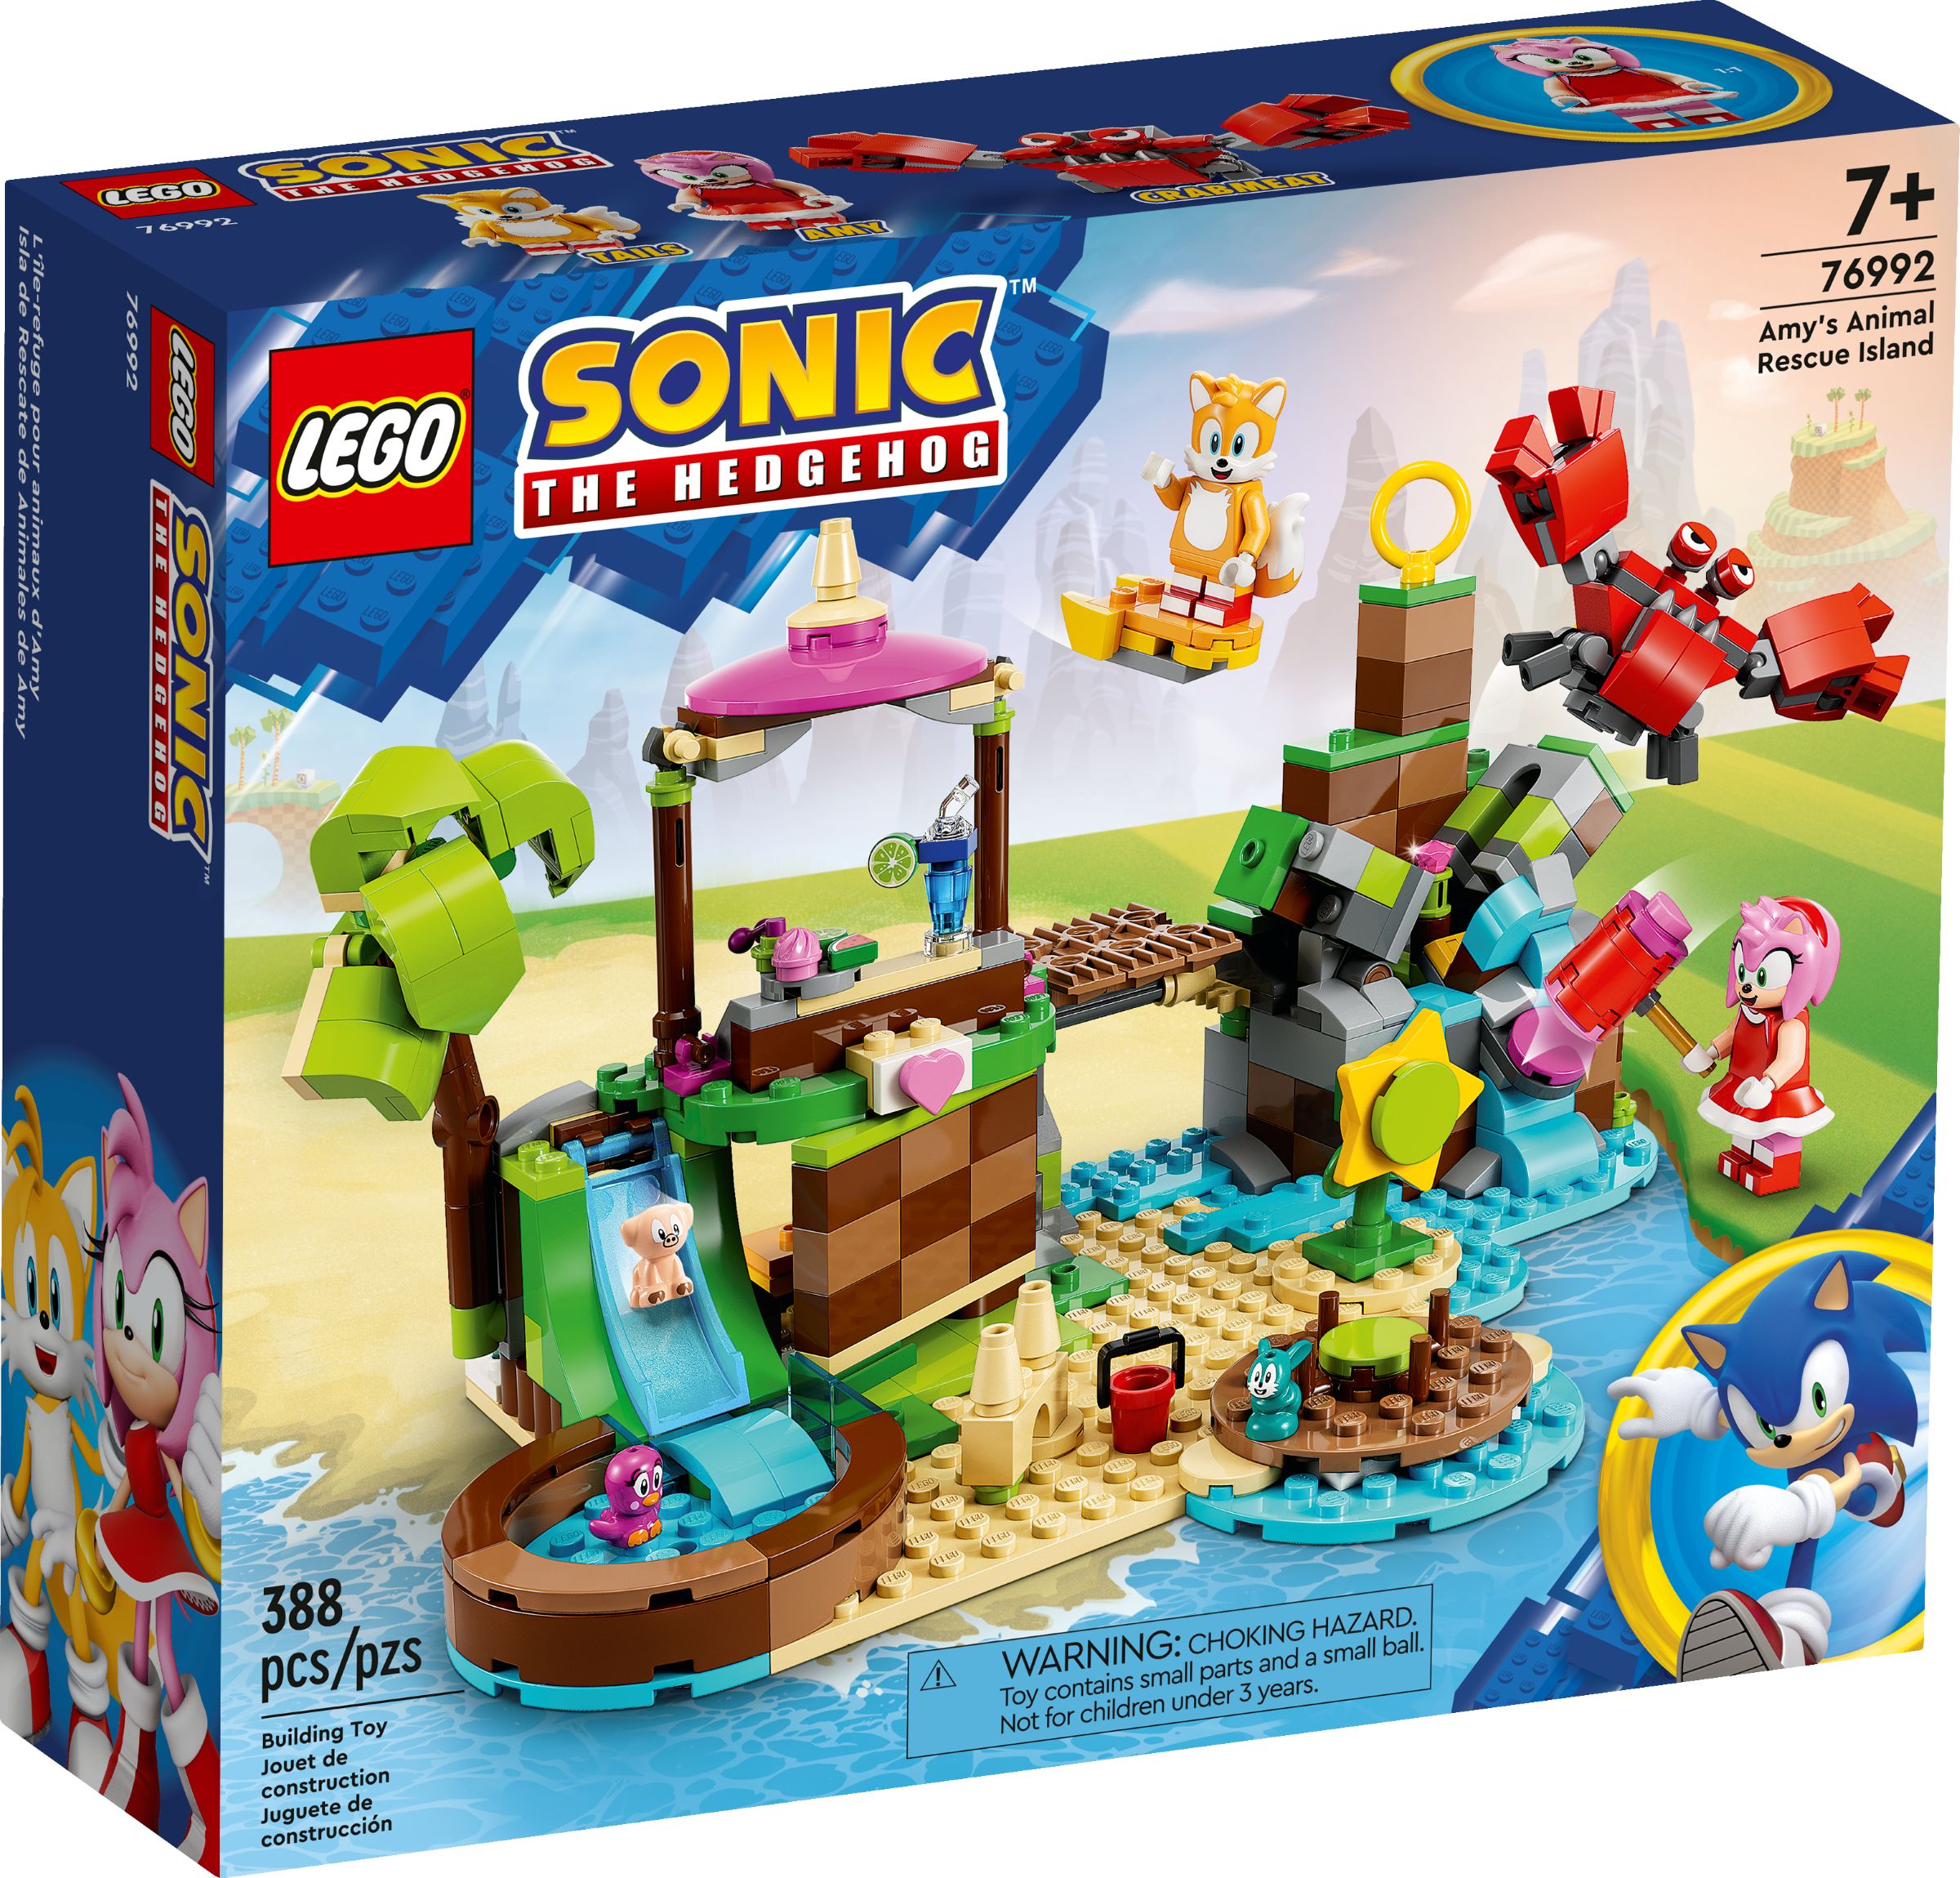 LEGO Sonic the Hedgehog 76992 Amys Tierrettungsinsel LEGO_76992_alt1.jpg